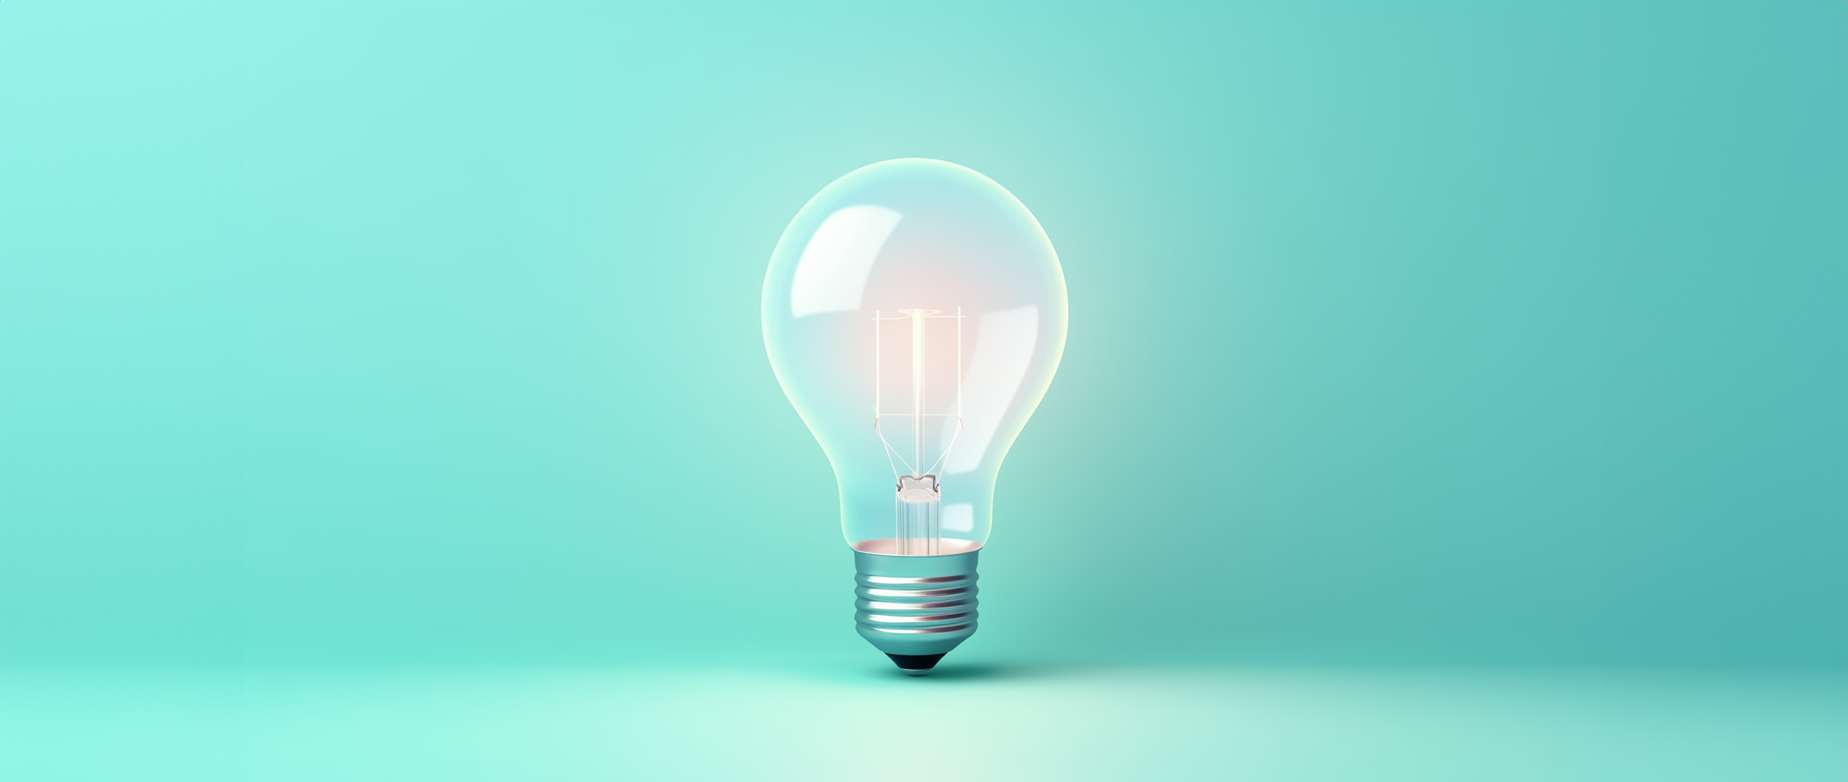 An illuminated light bulb on a blue background.